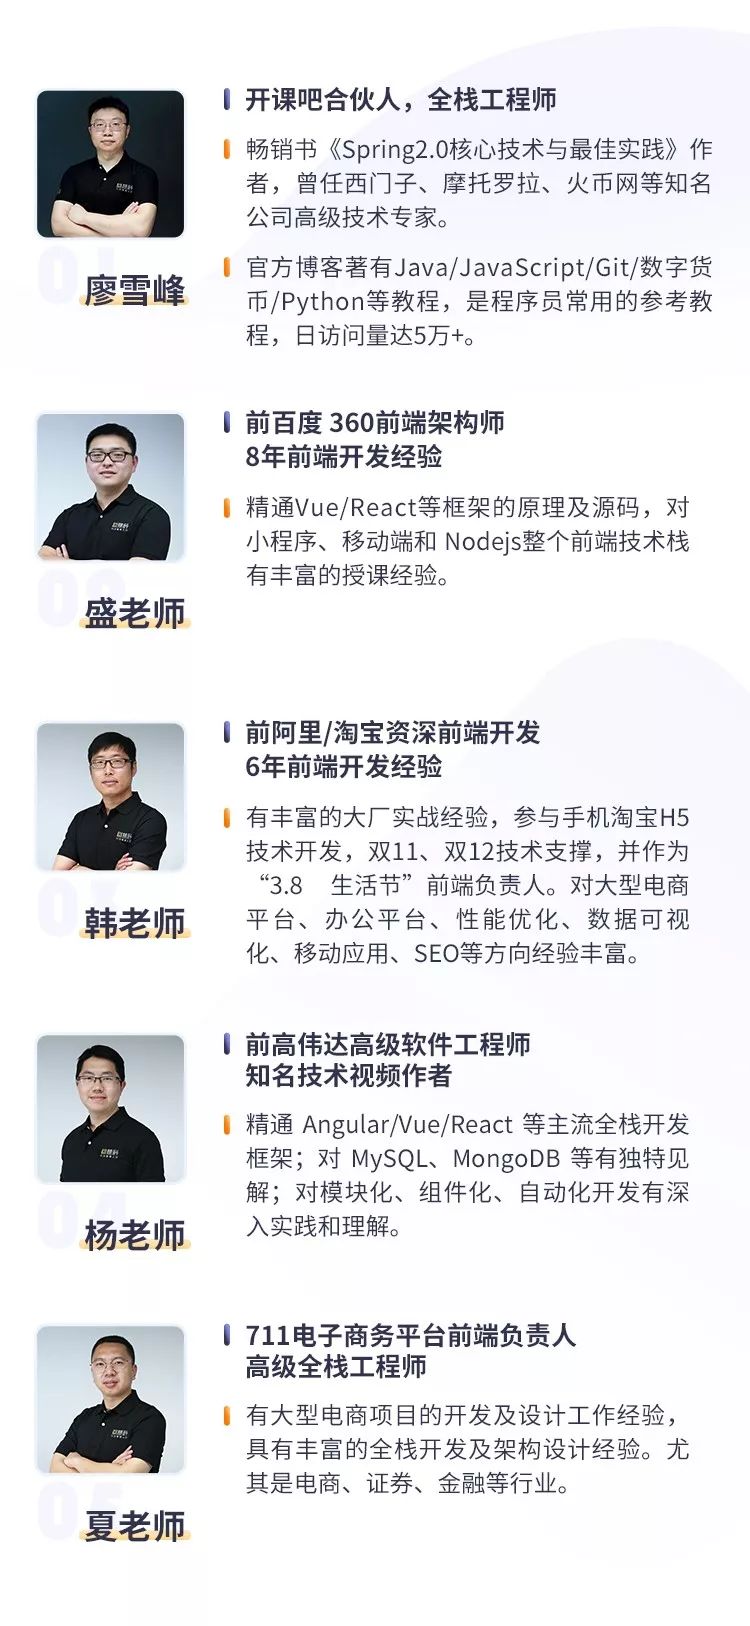 拿不到offer免费学，廖雪峰的“Web 全栈架构师”第16期招生了